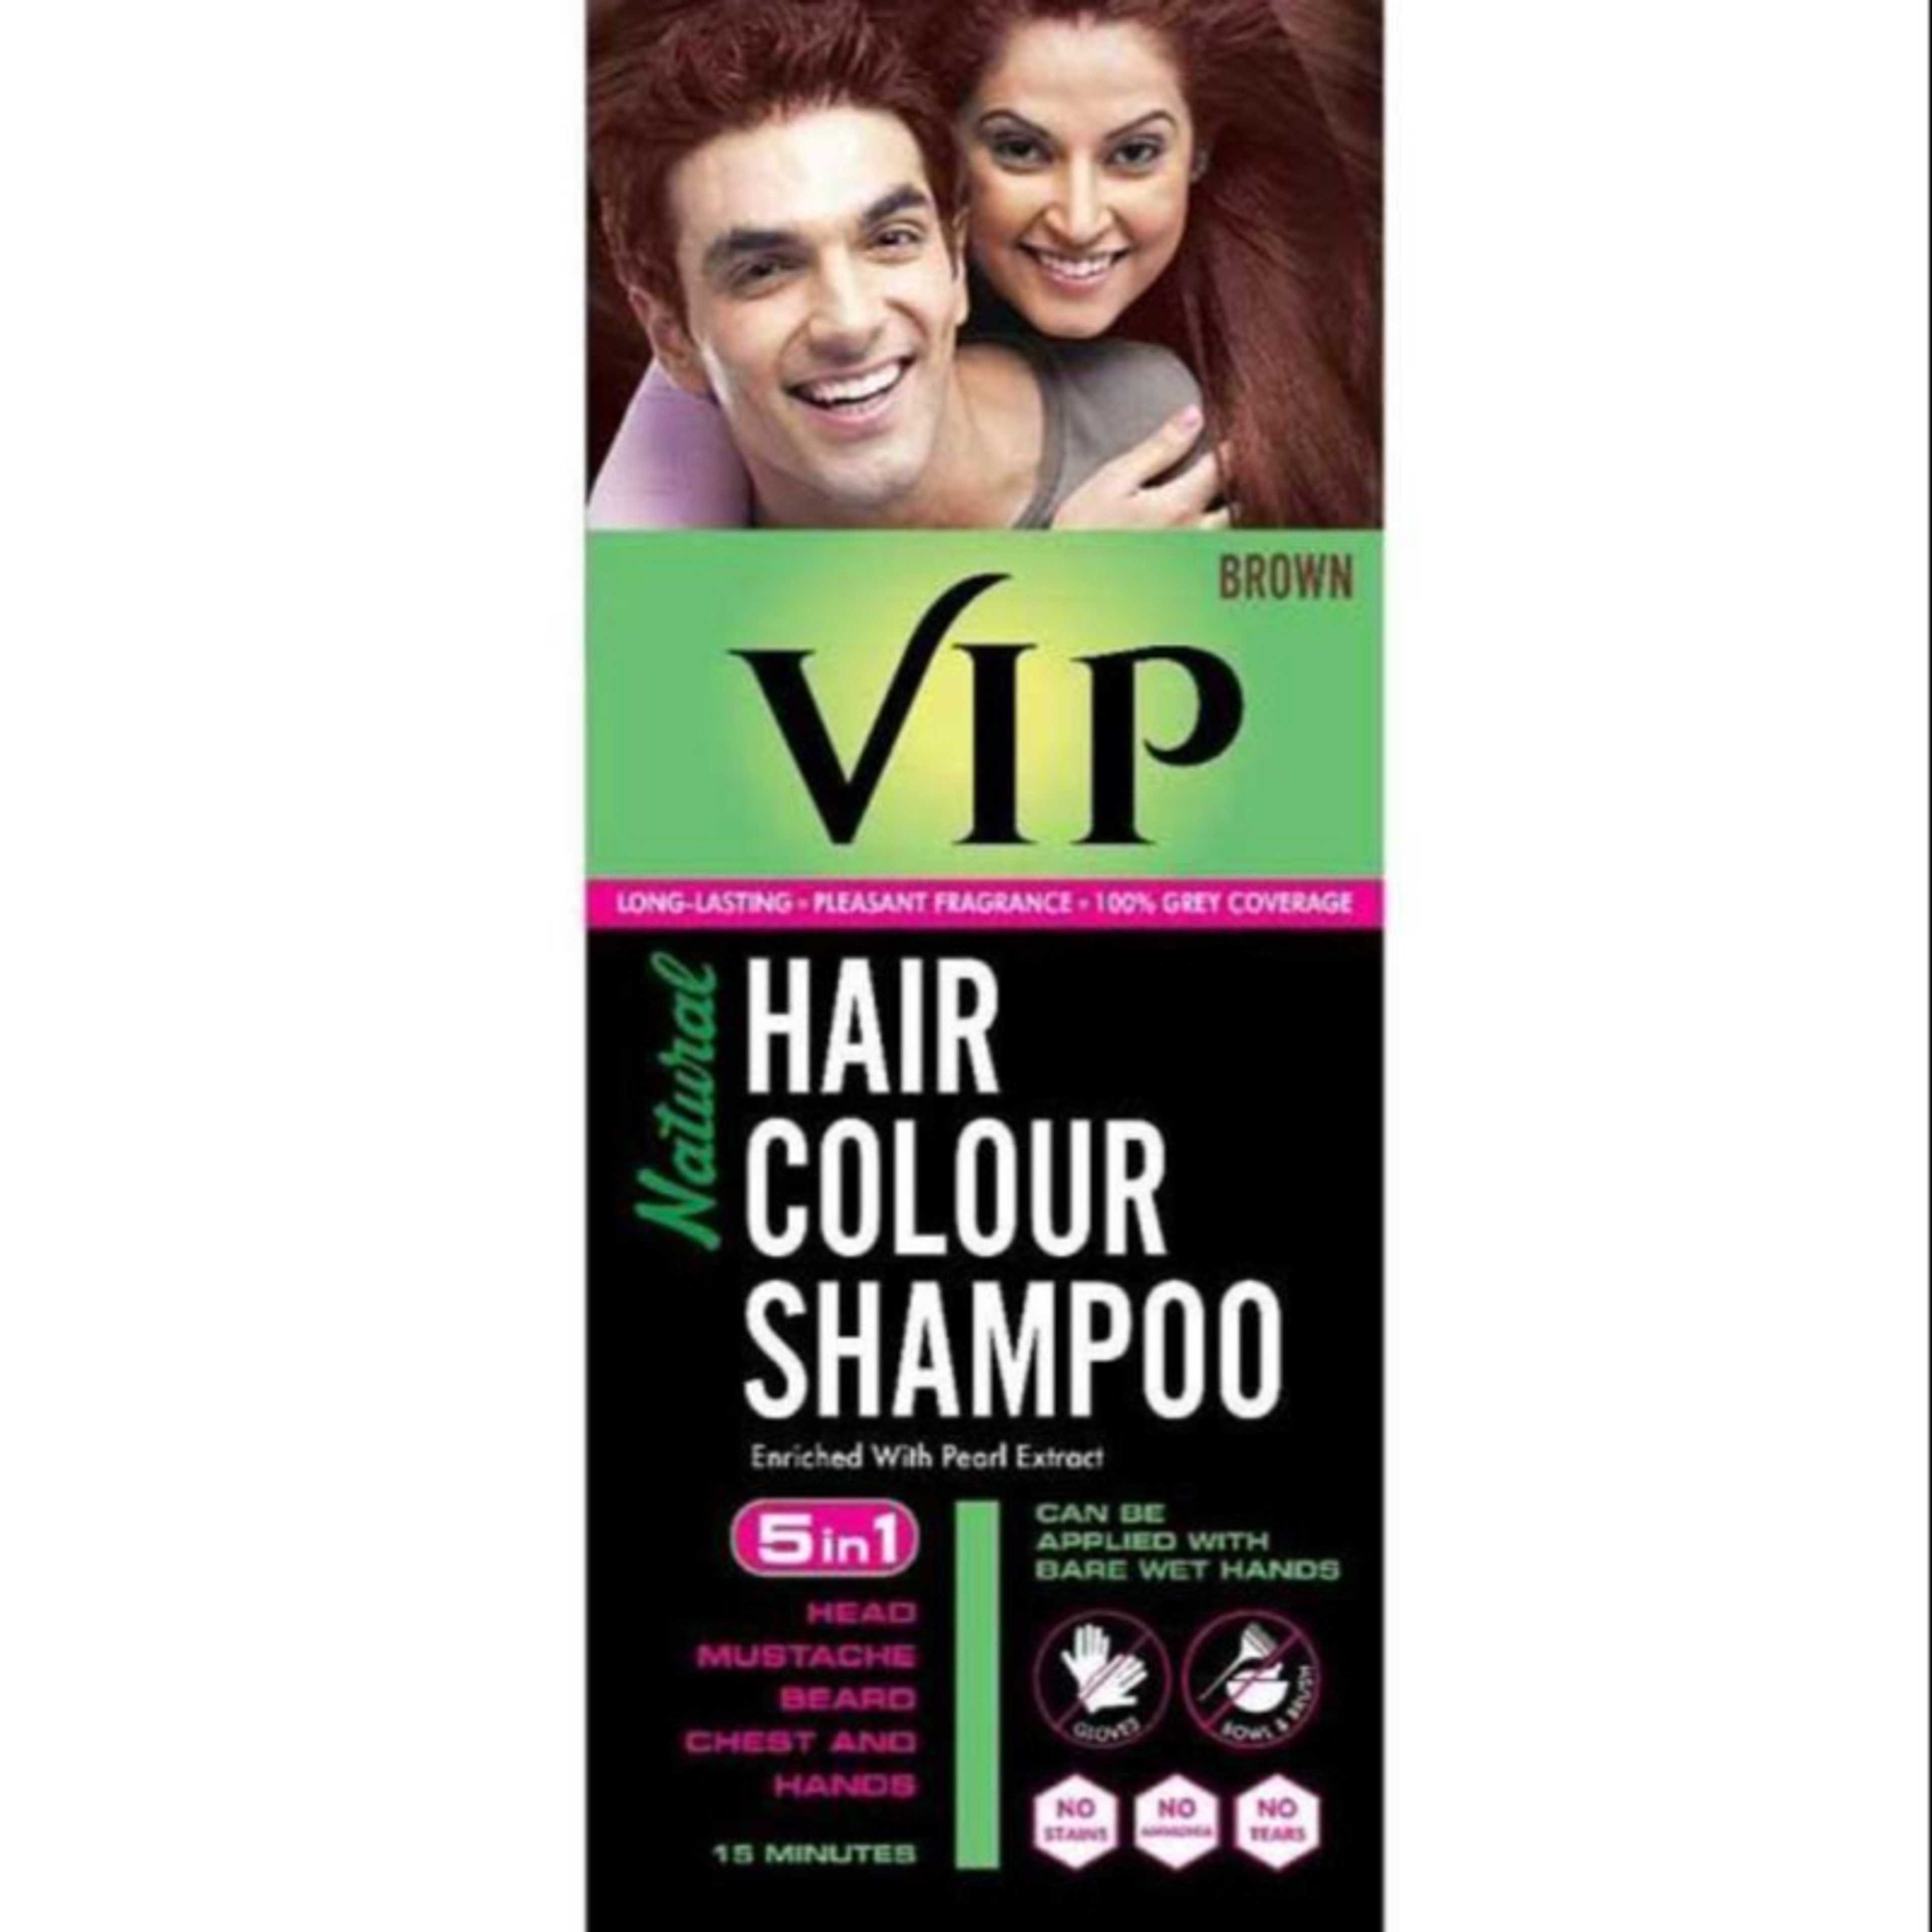 Vip Hair Colour Shampoo 180ml - Brown